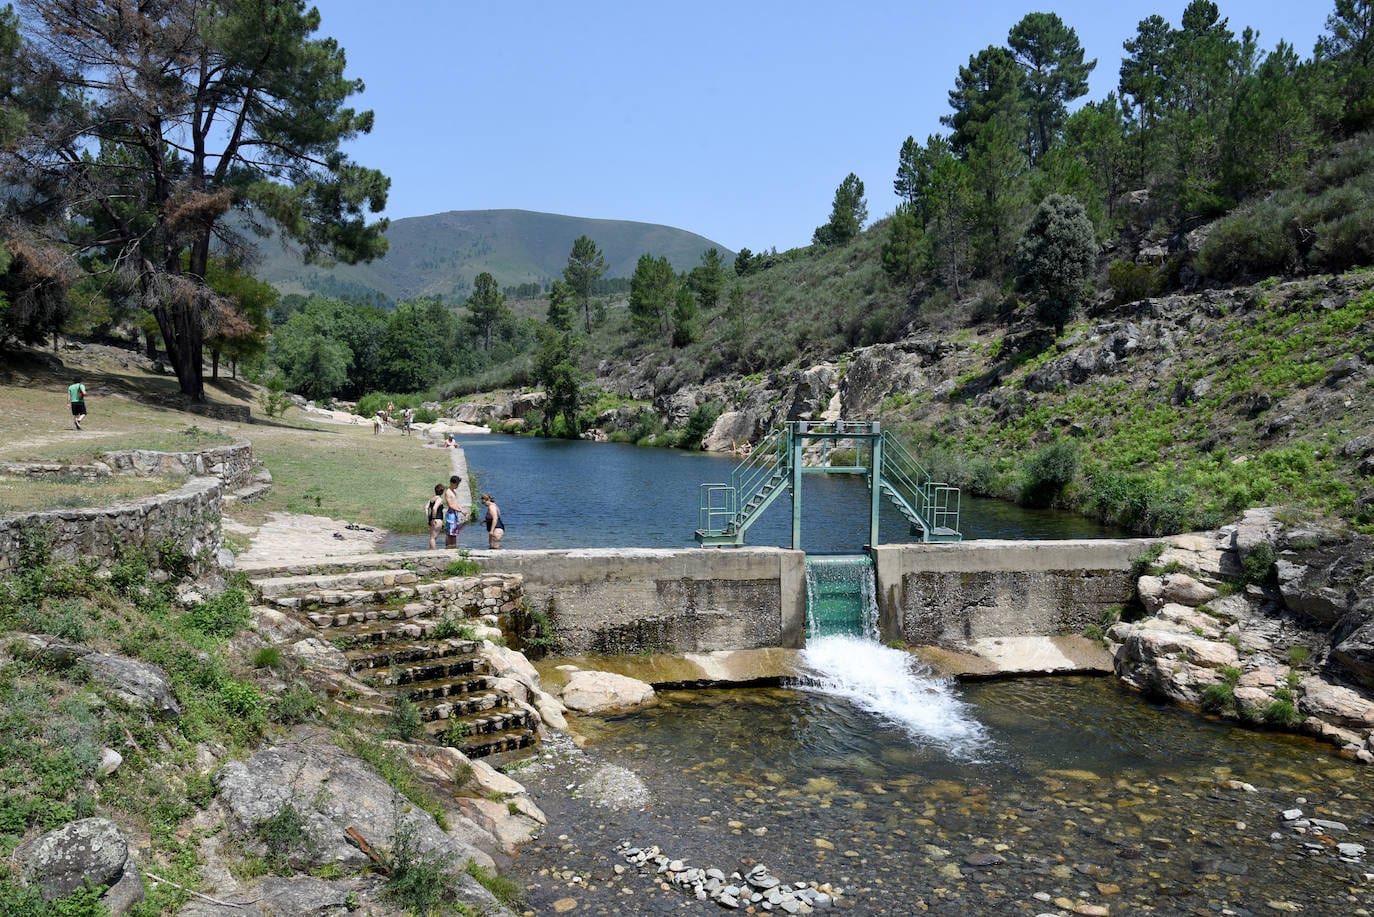 Piscina natural del río Jevero, en Acebo (Cáceres), una de las más grandes y bonitas de Extremadura.